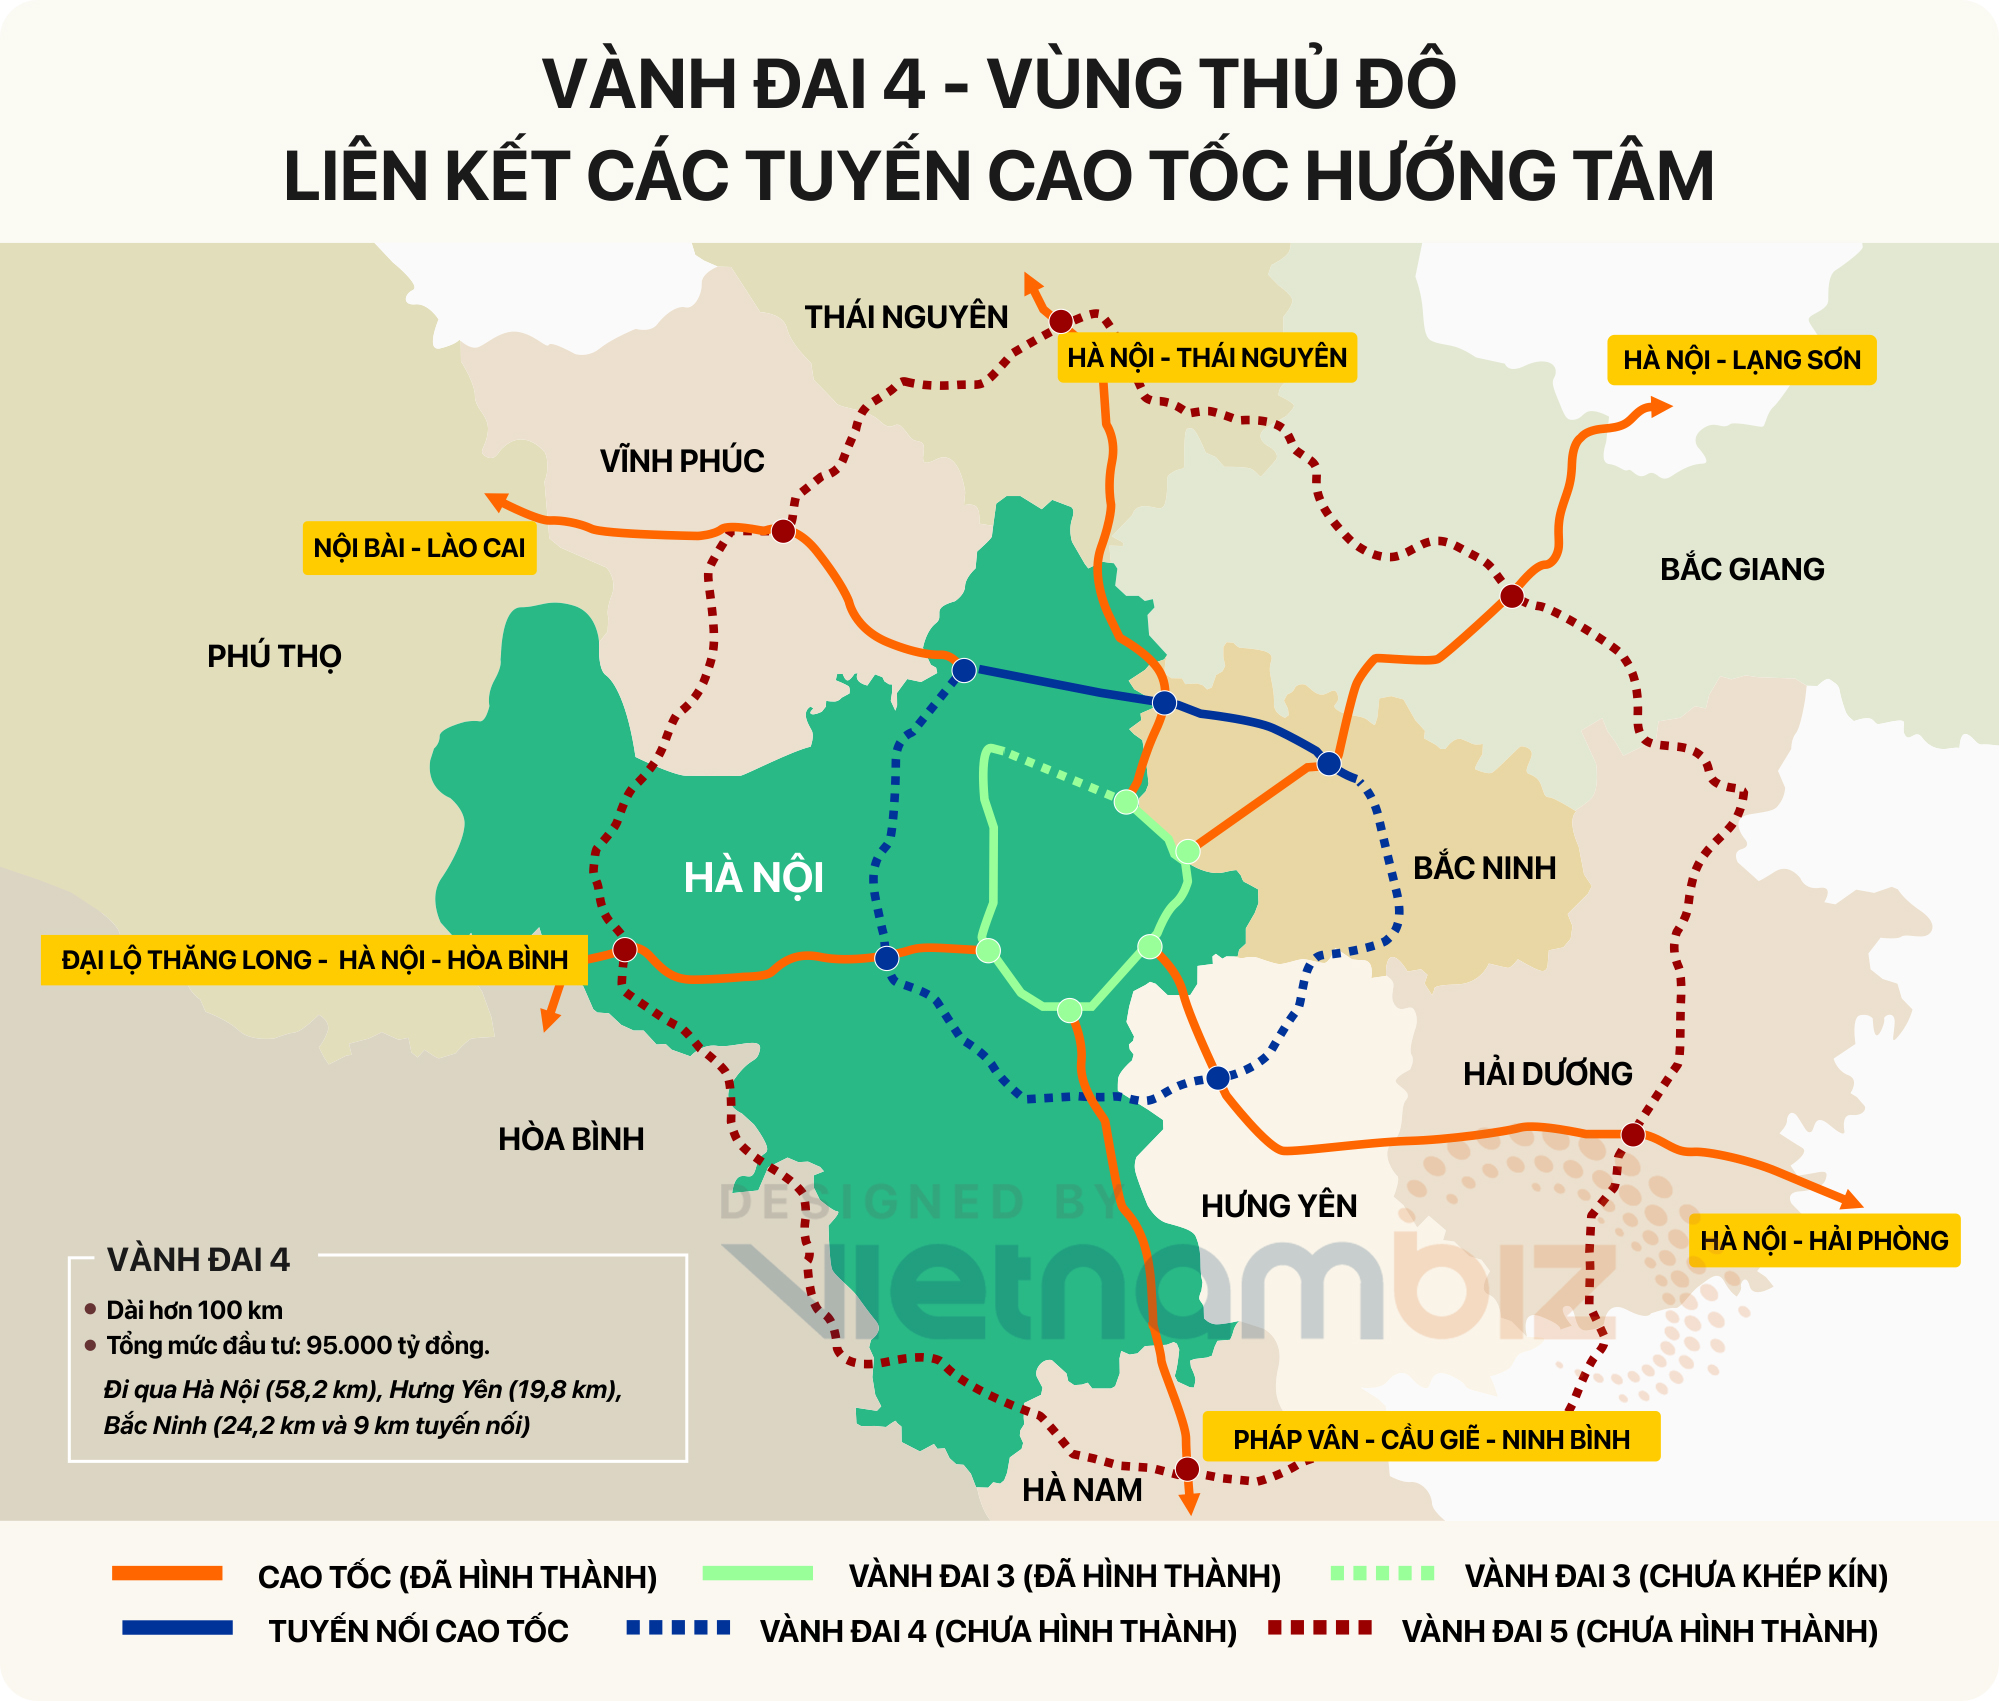 Hà Nội đang đầu tư mạnh vào dự án Bắc Ninh và Bắc Giang năm 2024, hứa hẹn sẽ tạo ra nhiều tiềm năng phát triển kinh tế và du lịch cho cả hai tỉnh. Khám phá bản đồ để tìm hiểu về những kế hoạch và dự án lớn đang được triển khai trong tương lai gần đây.